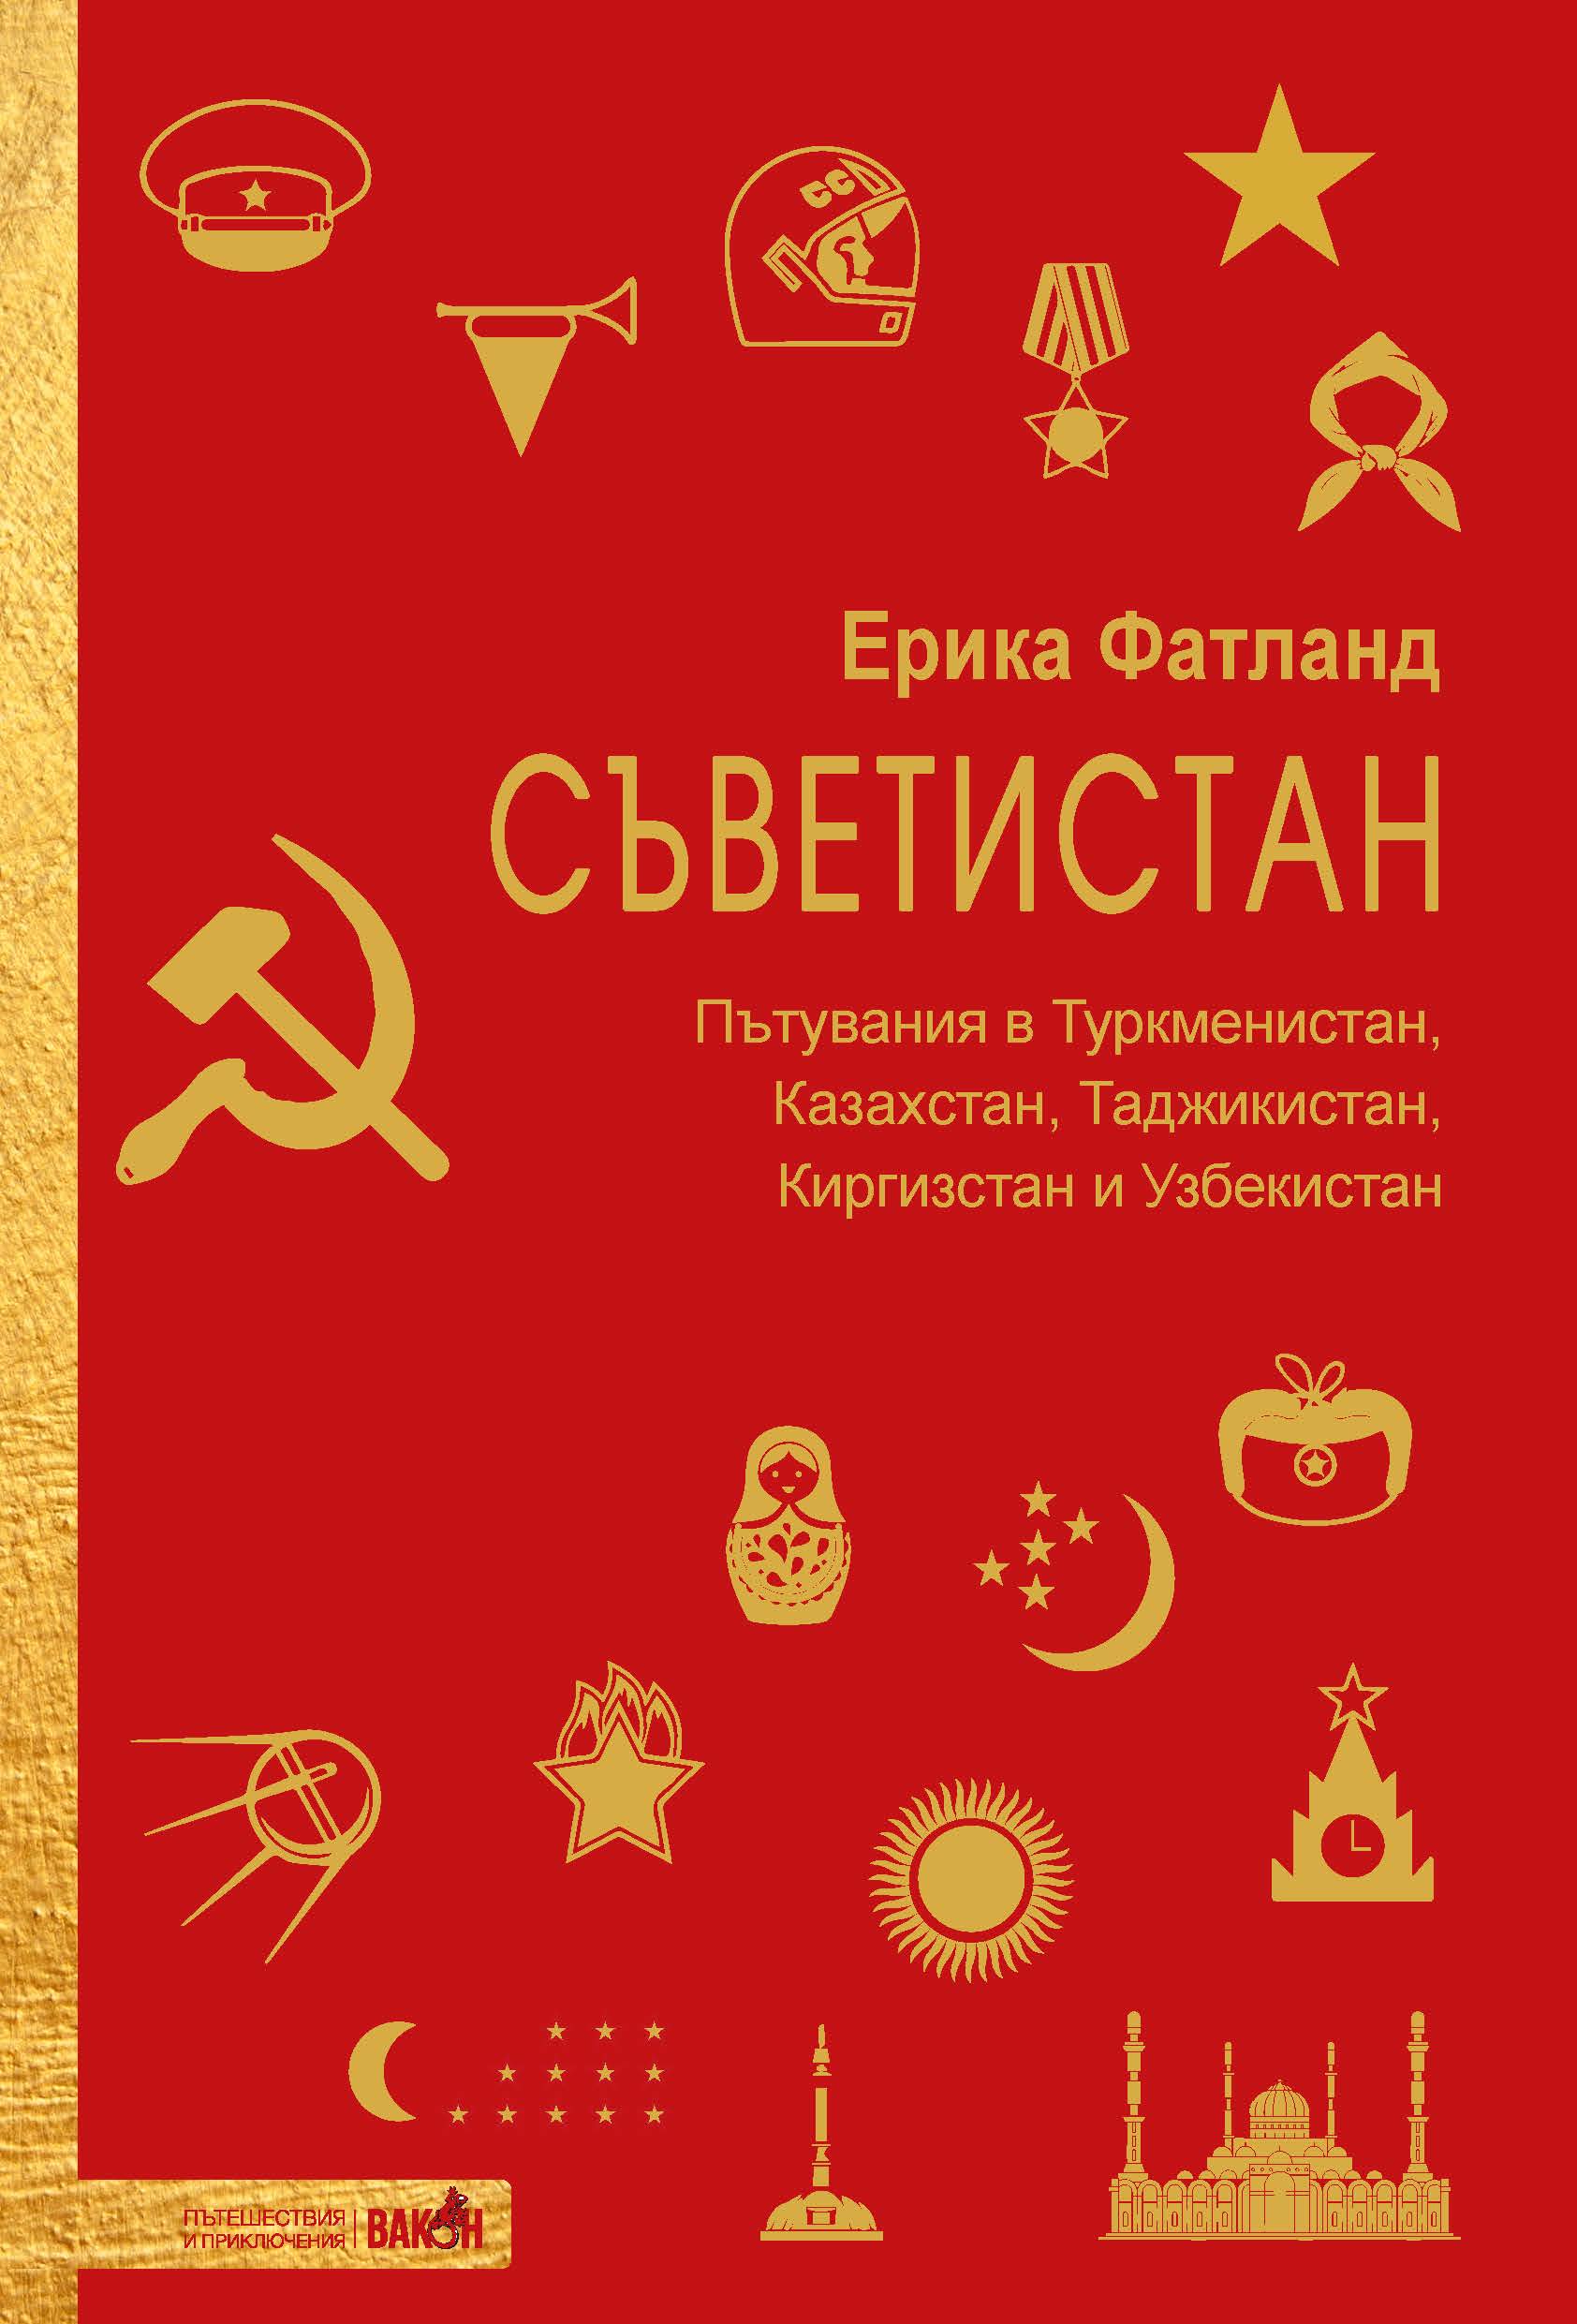 Ерика Фатланд: "Съветистан"